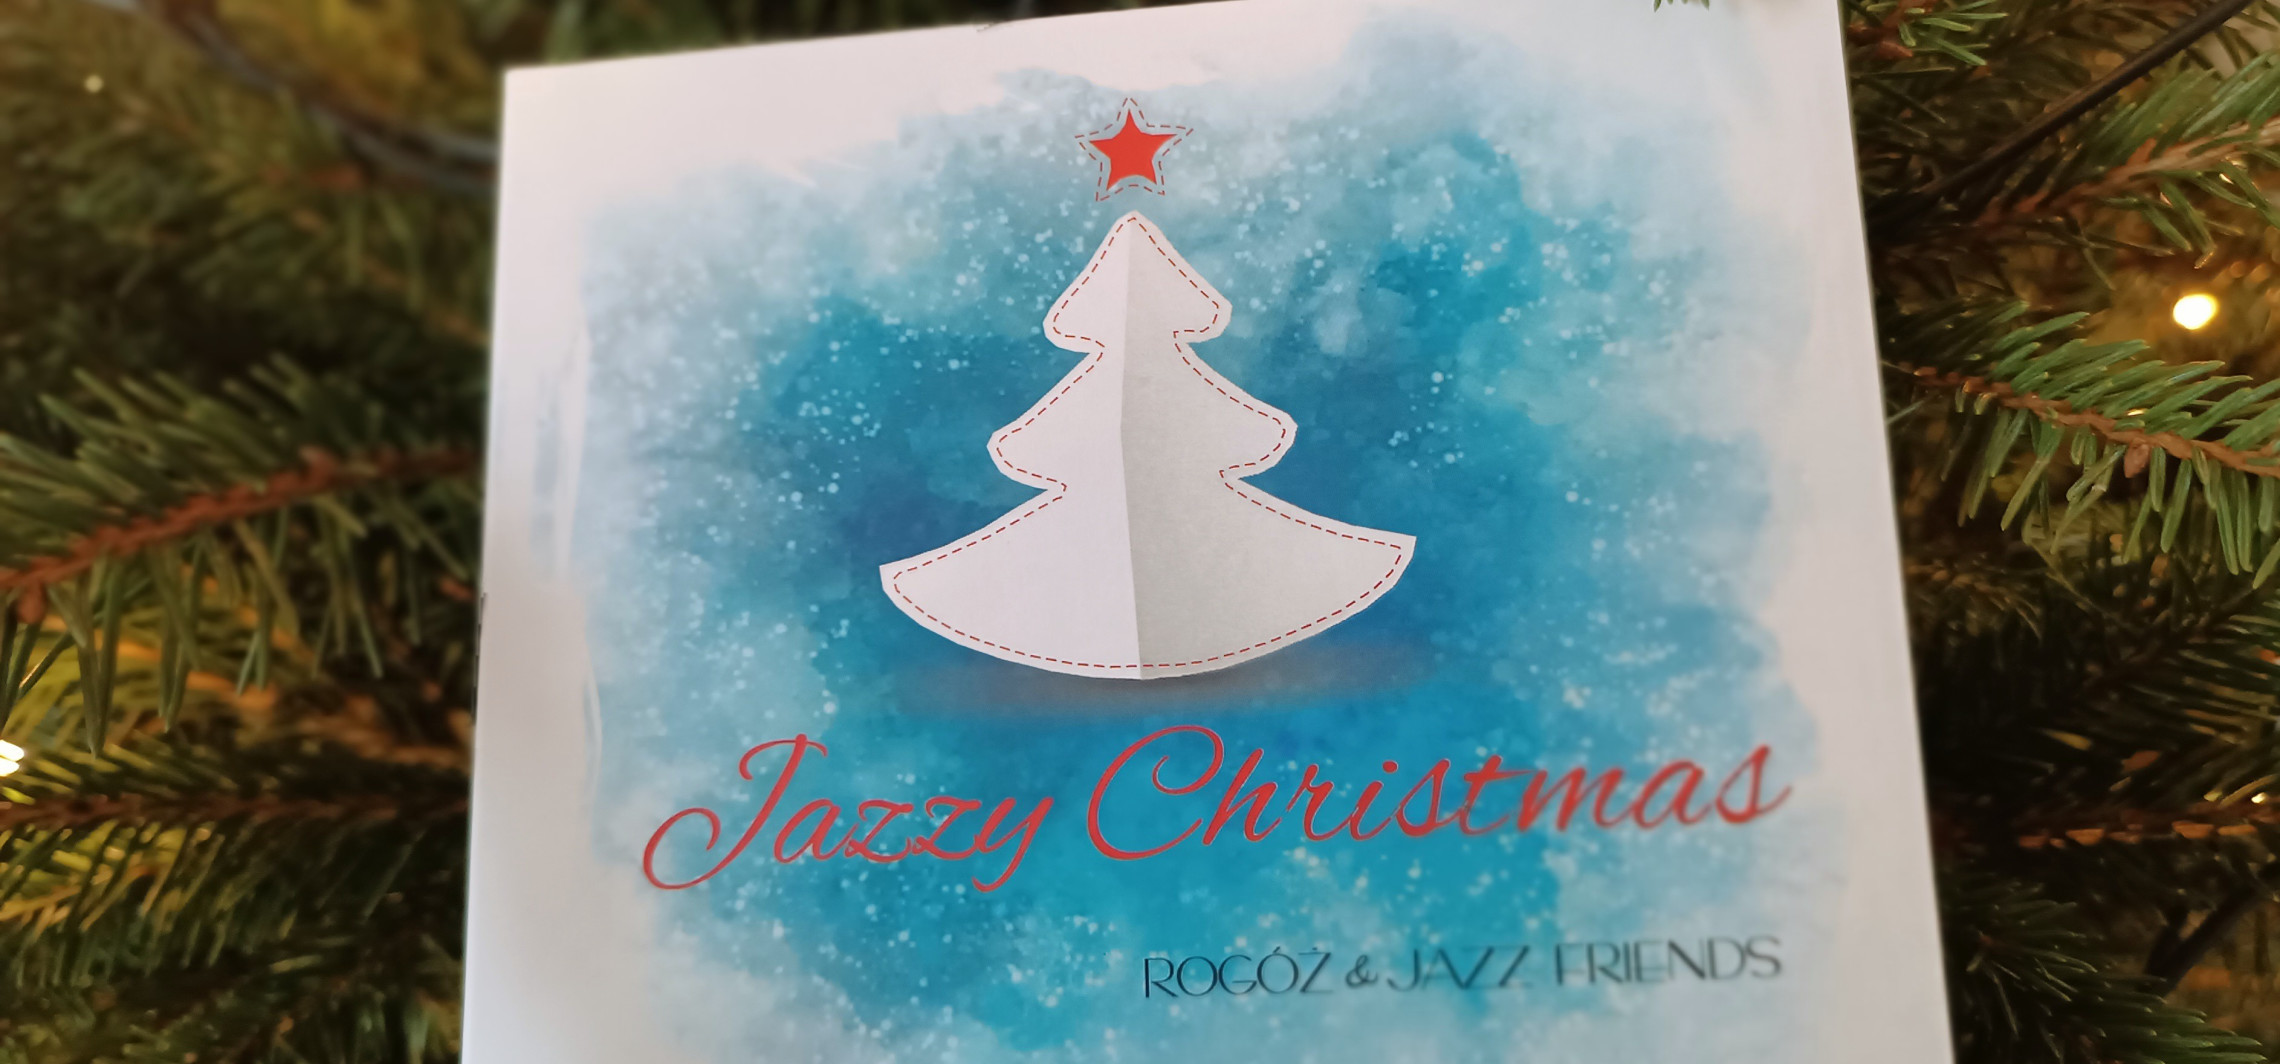 Inowrocław - "Jazzy Christmas", czyli muzyczny krążek nagrany przez inowrocławian